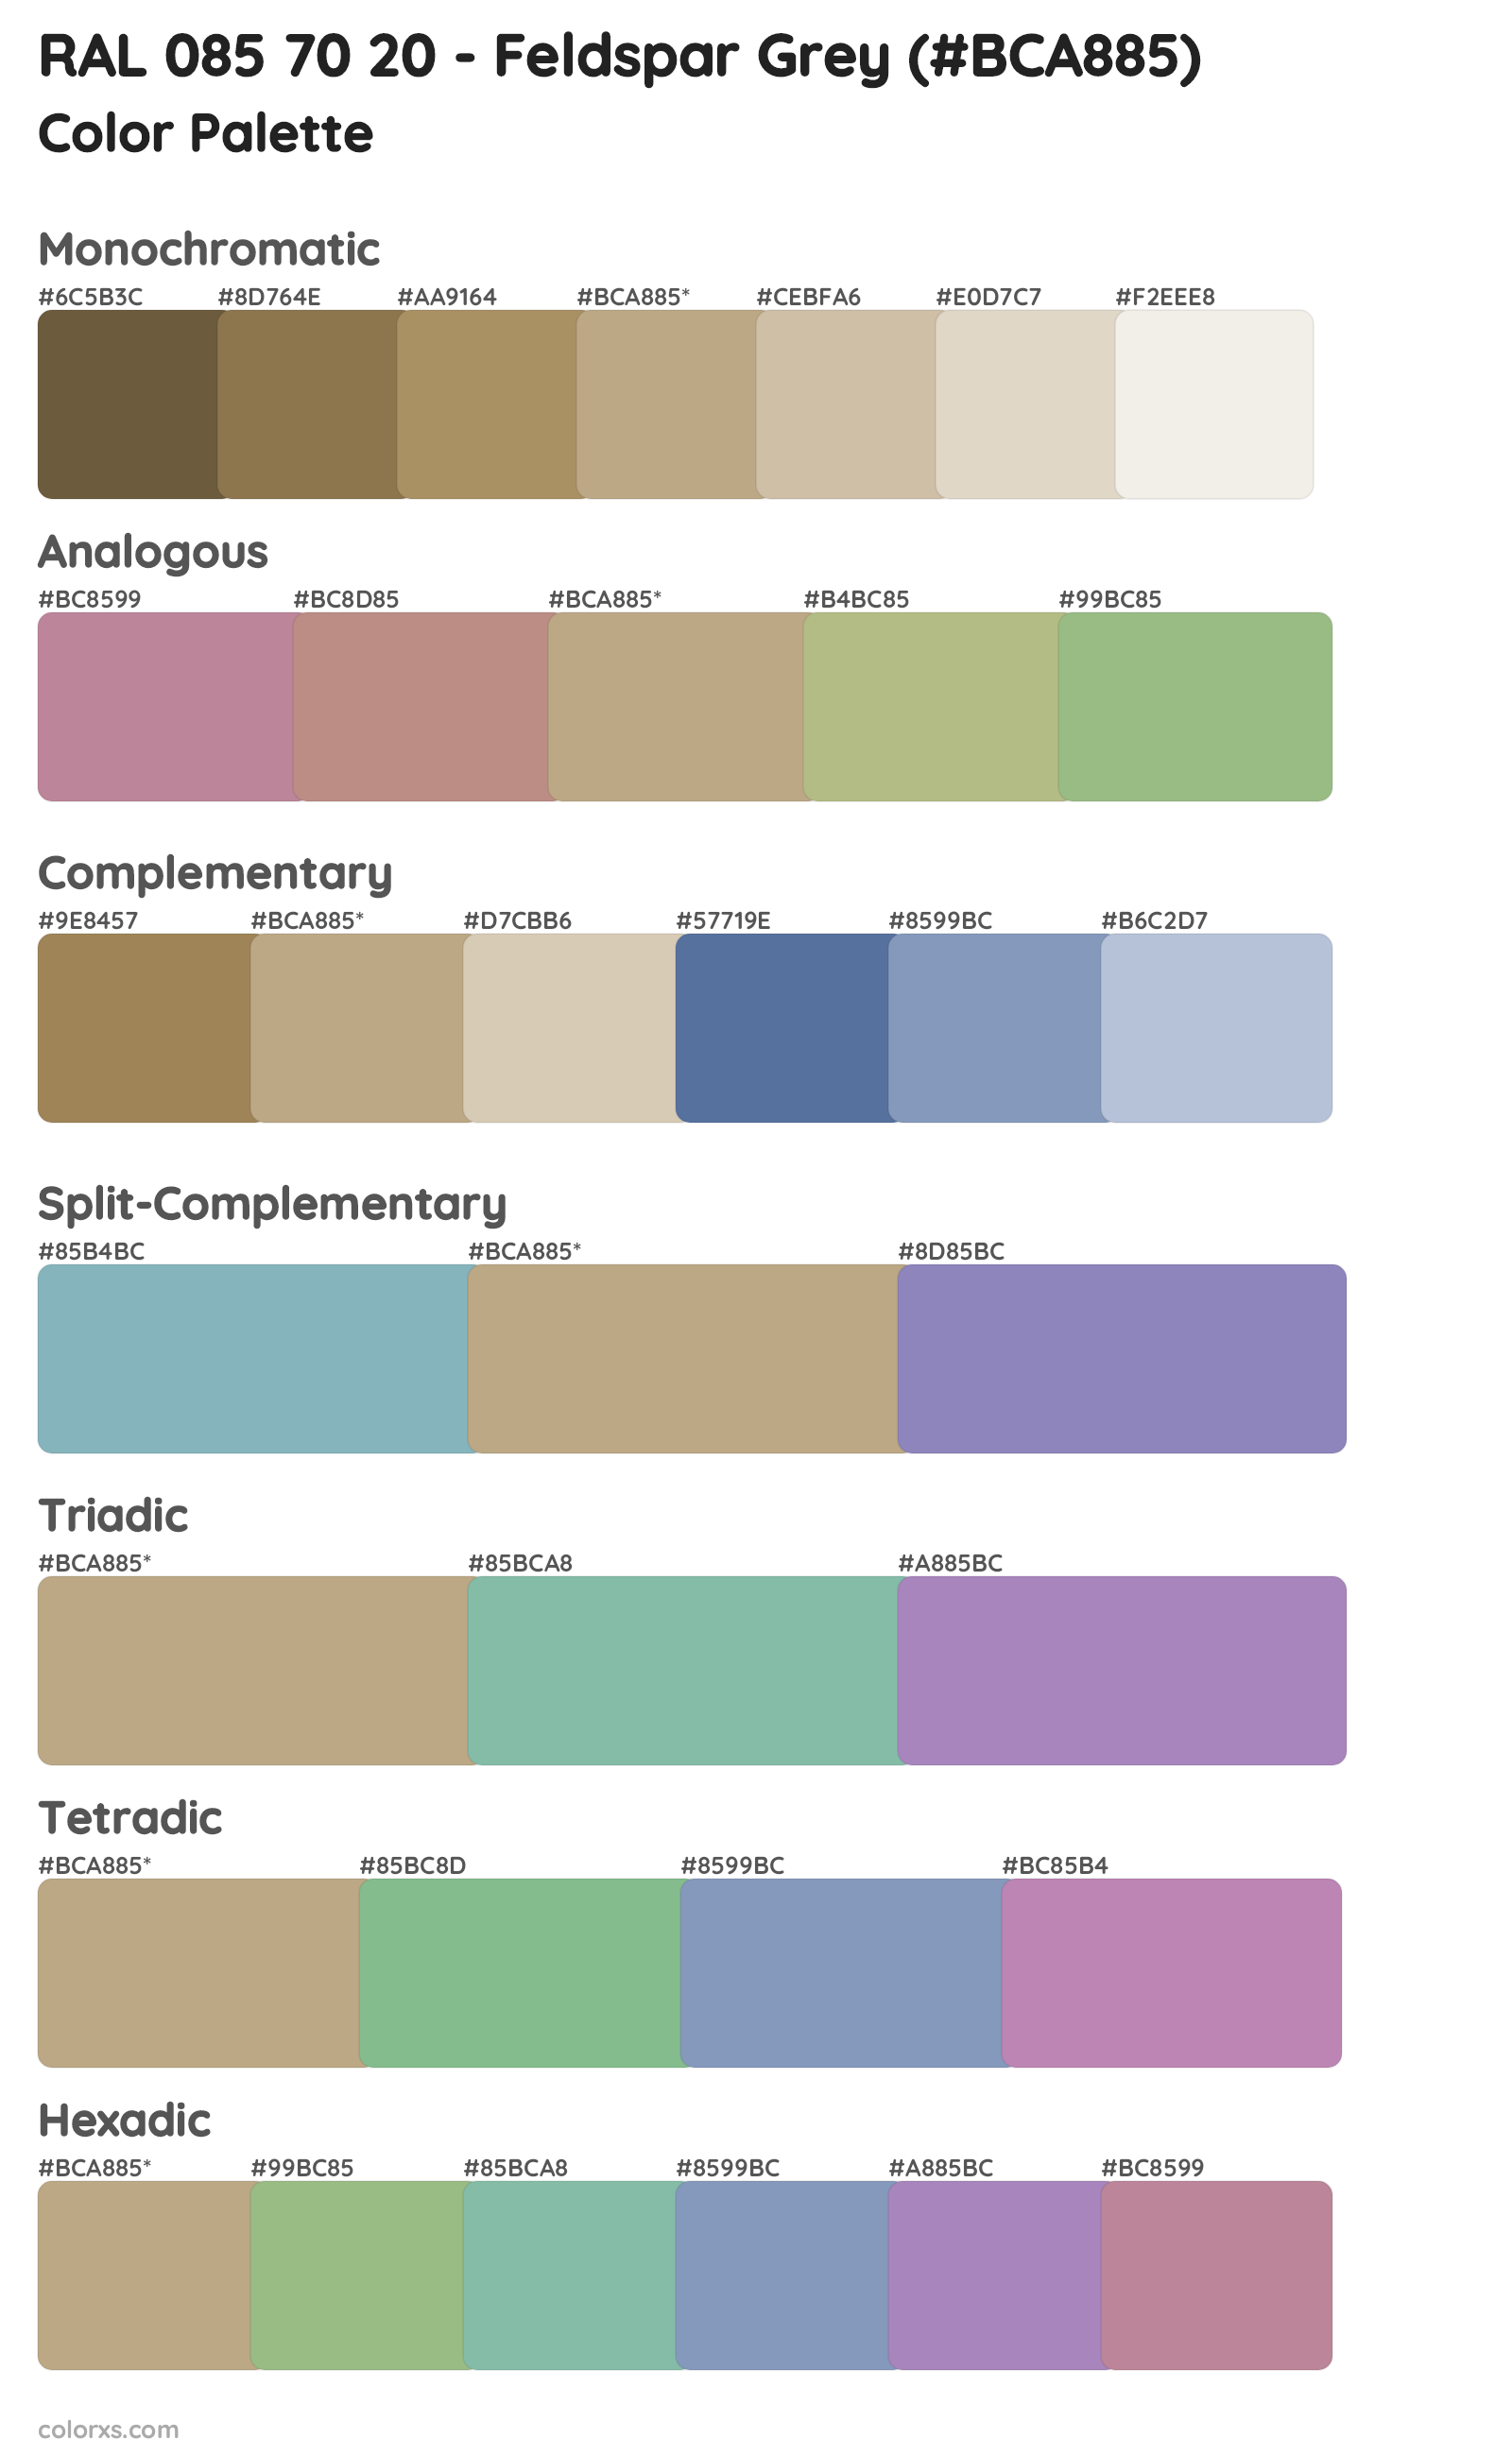 RAL 085 70 20 - Feldspar Grey Color Scheme Palettes